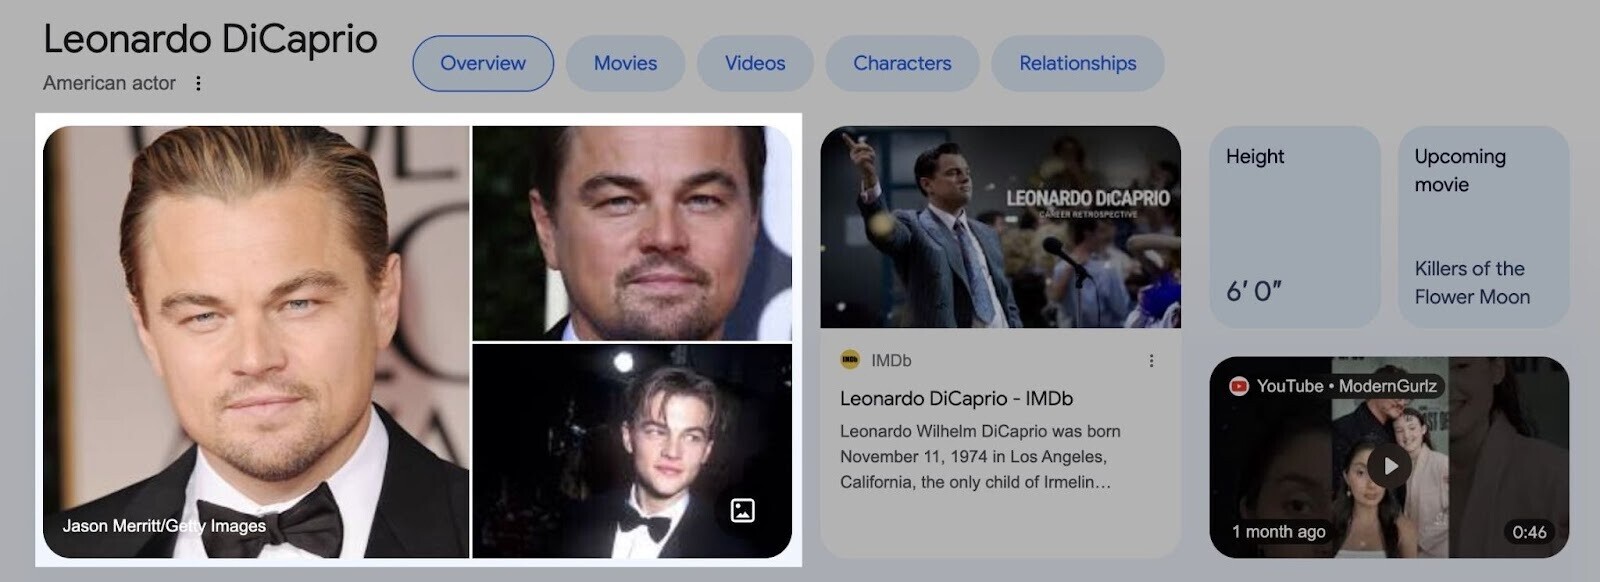 Google images results for Leonardo DiCaprio